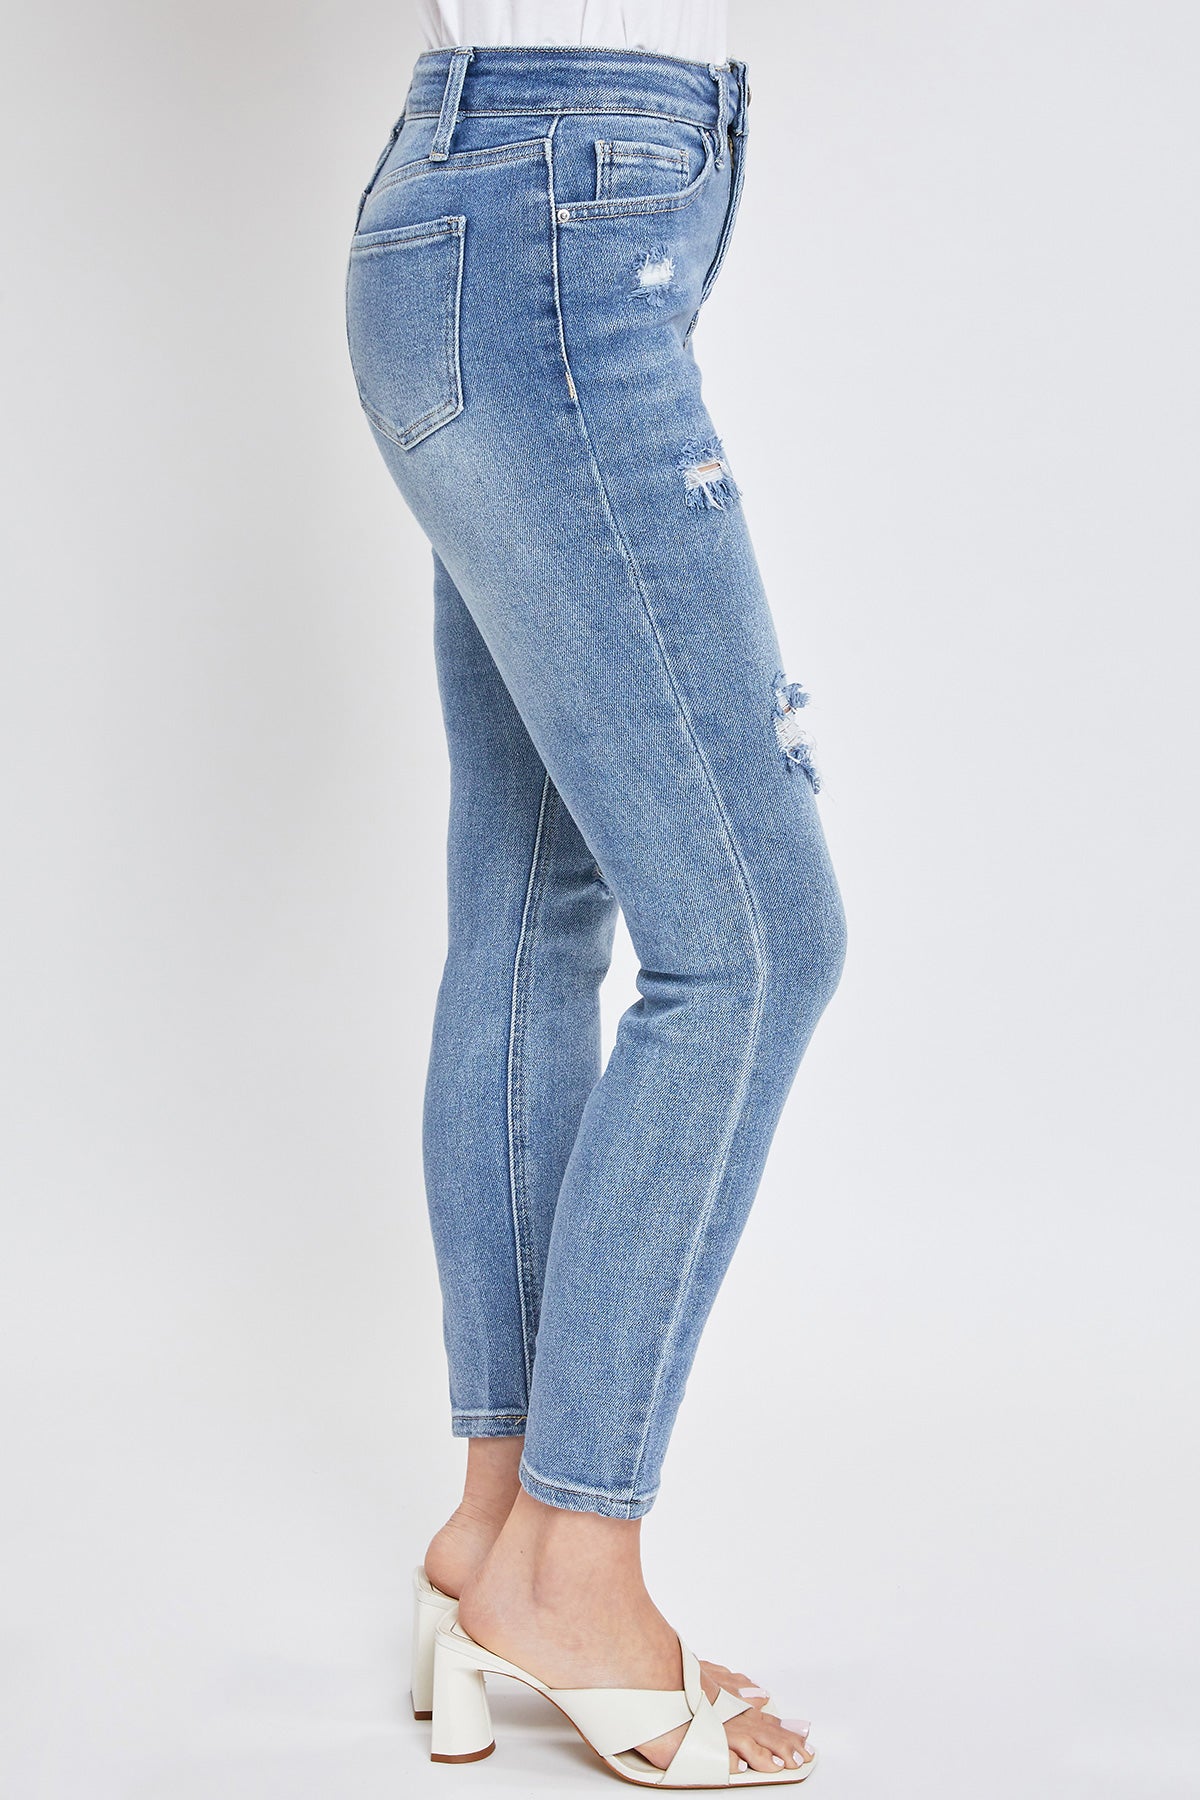 Missy Vintage Dream High-Rise Distressed Skinny Jean, Pack Of 12